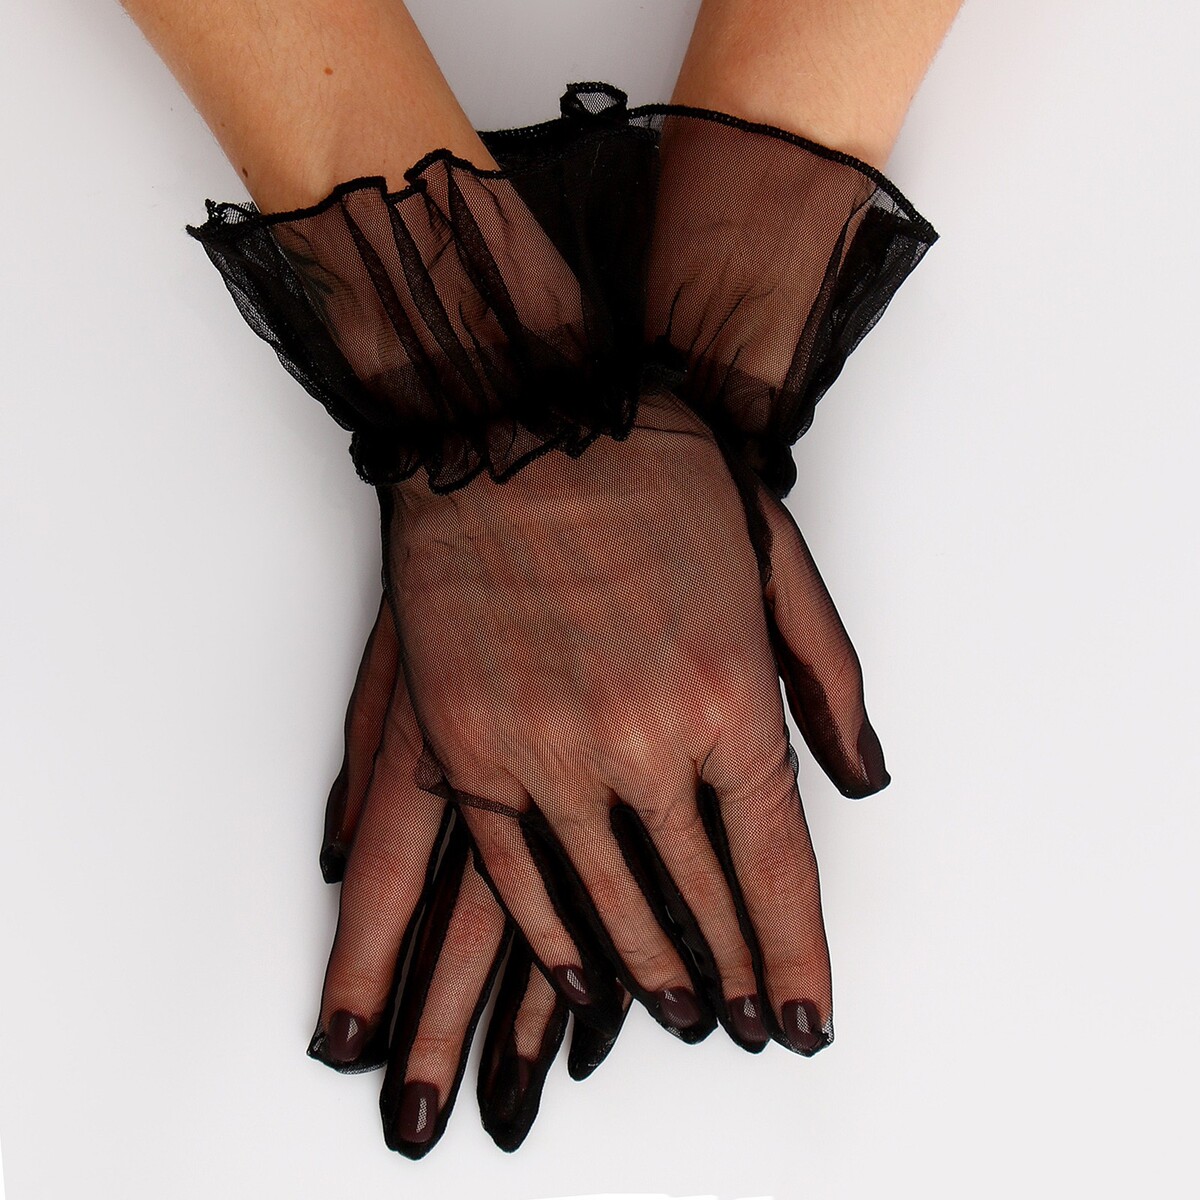 Карнавальный аксессуар - перчатки прозрачные с юбочкой, цвет черный карнавальнеый аксессуар перчатки прозрачные с длинной юбочкой